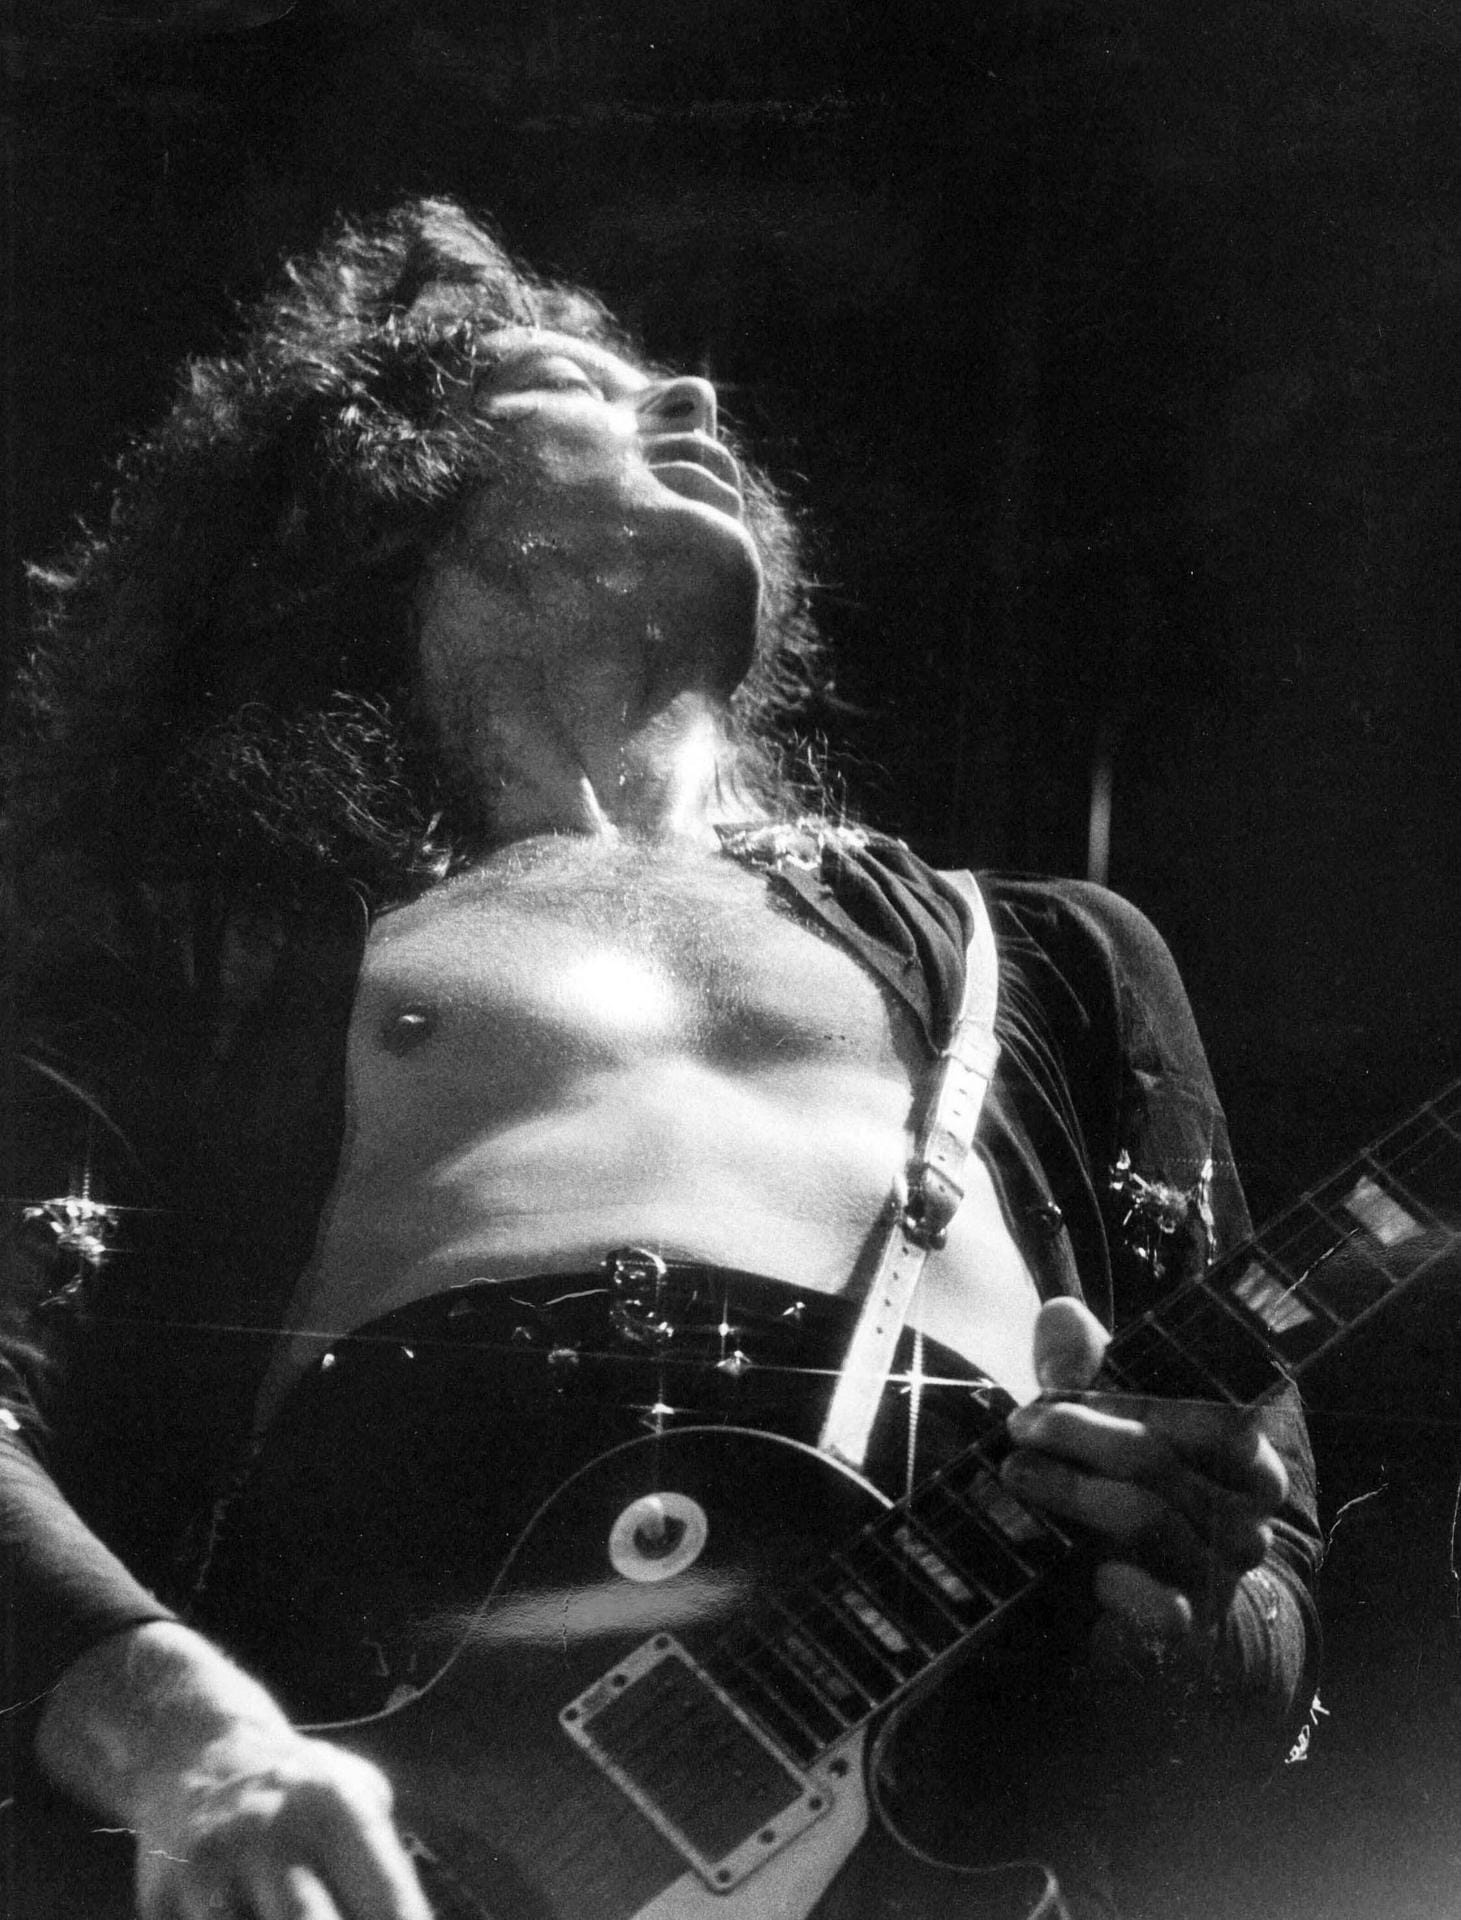 Jimmy Page am Gitarrespielen: Der Gitarrist ist bekannt für seine einzigartigen Riffs.